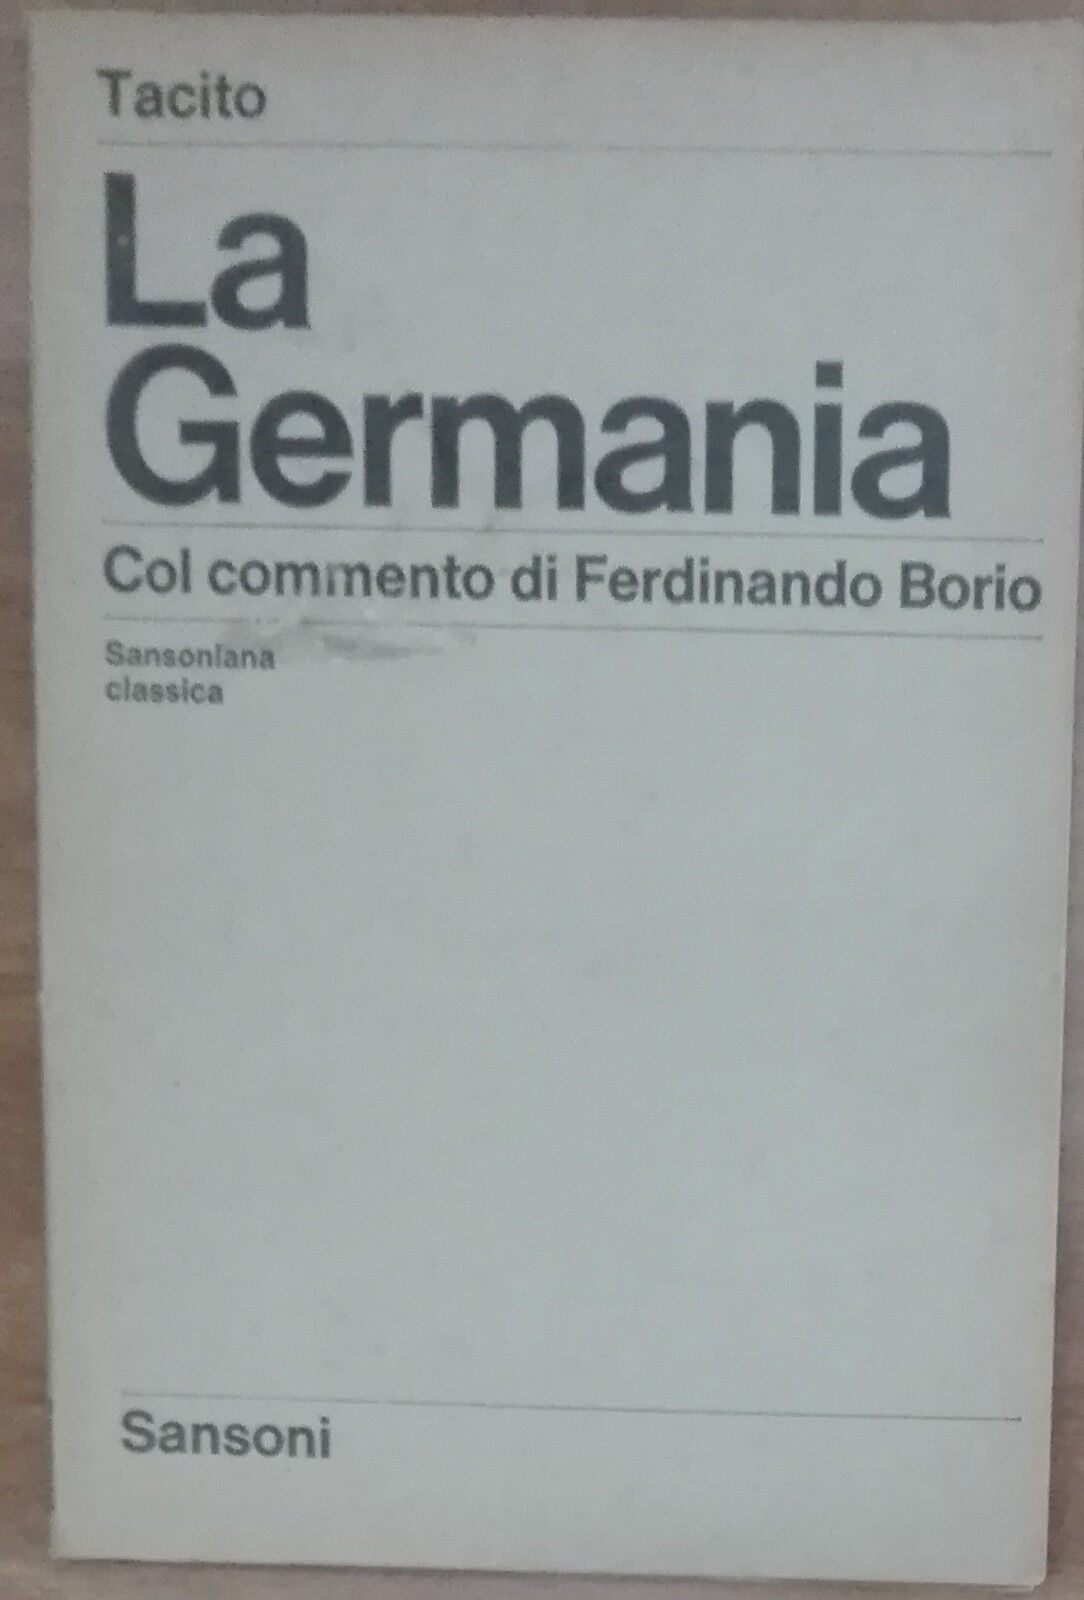 La Germania - Tacito - Sansoni,1967 - A